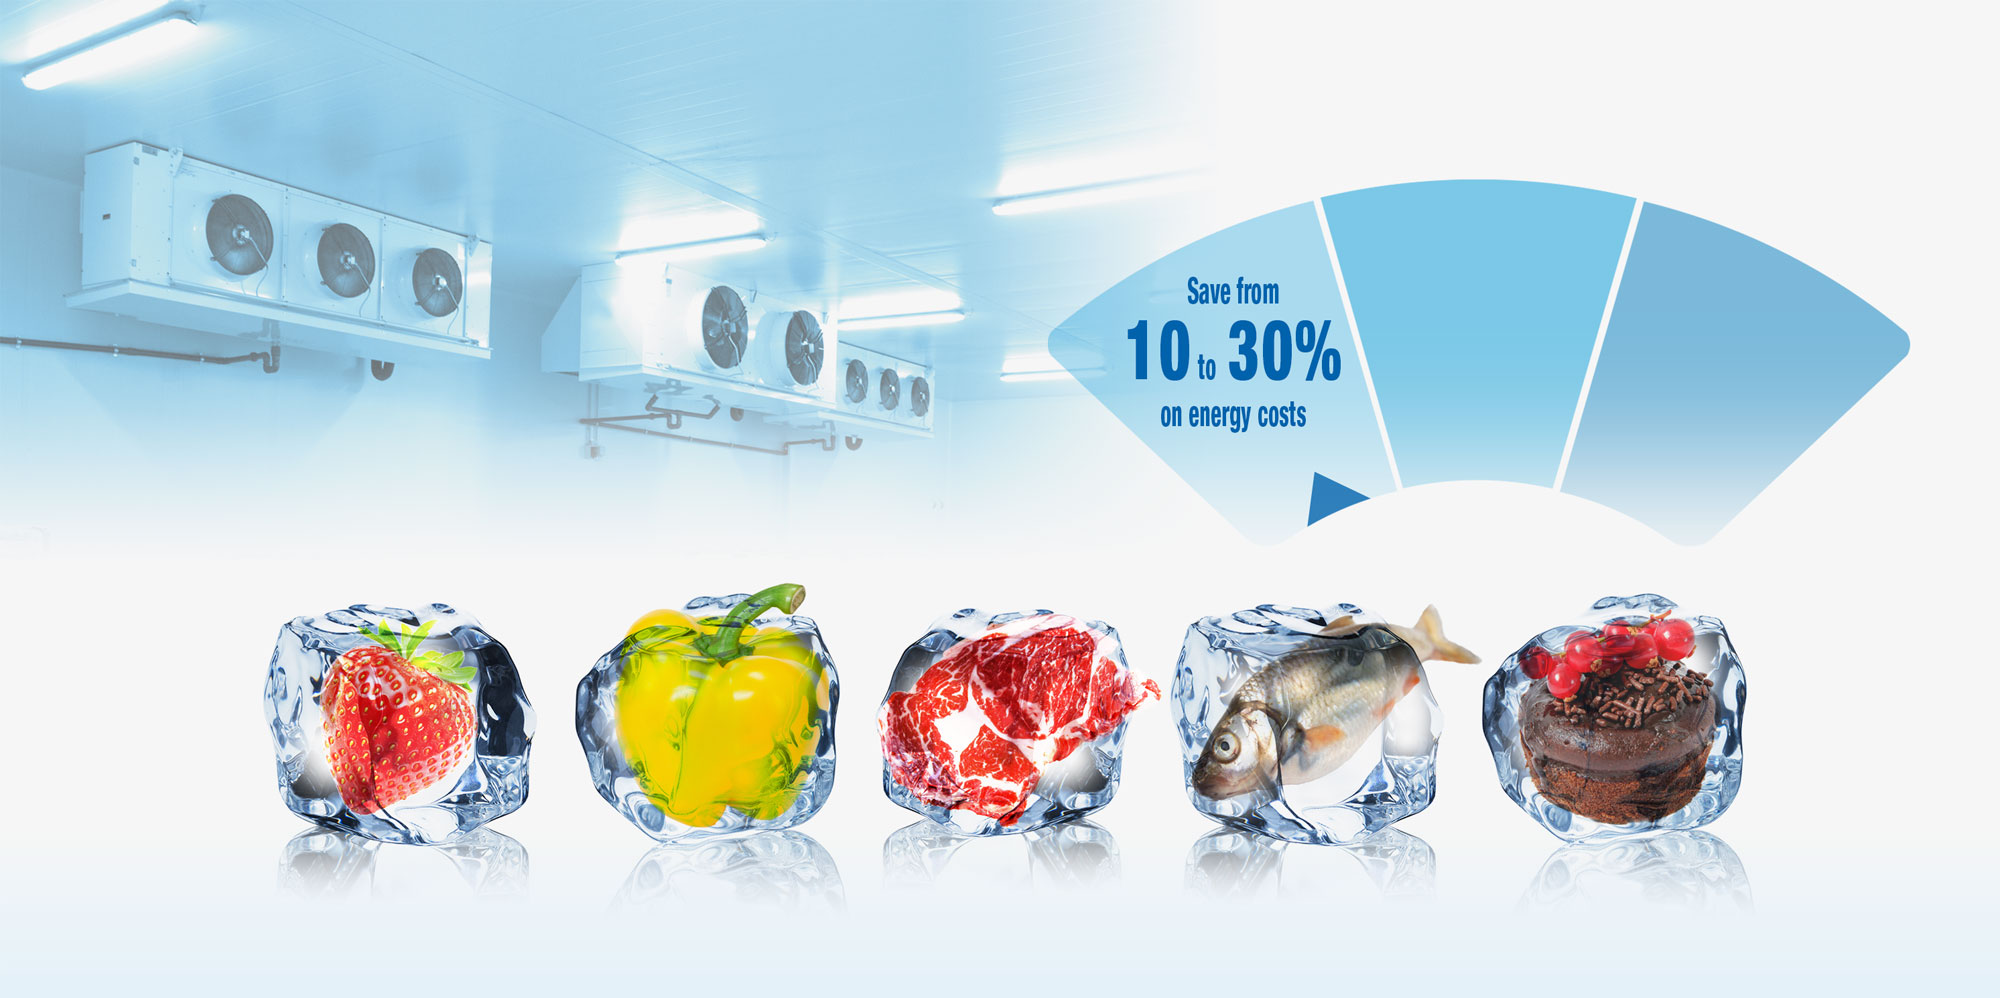 Refrigeration plant industrial refrigeration systems - slide 2